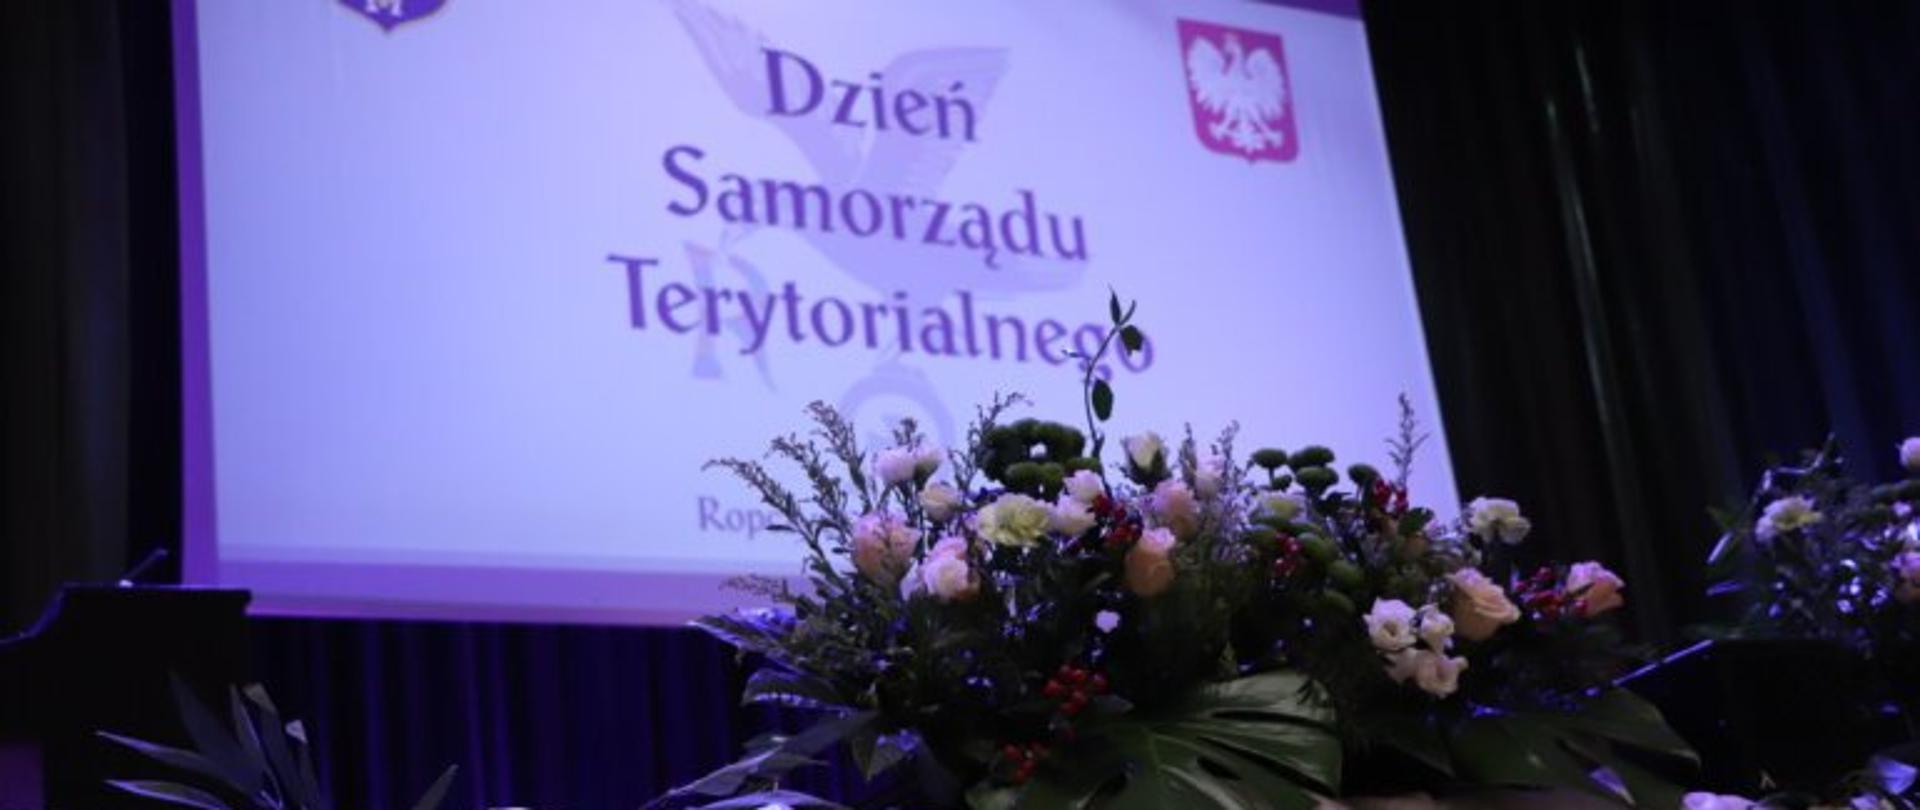 Zdjęcie przedstawiające slajd z napisem Dzień Samorządu terytorialnego oraz wiązankę kwiatów. 